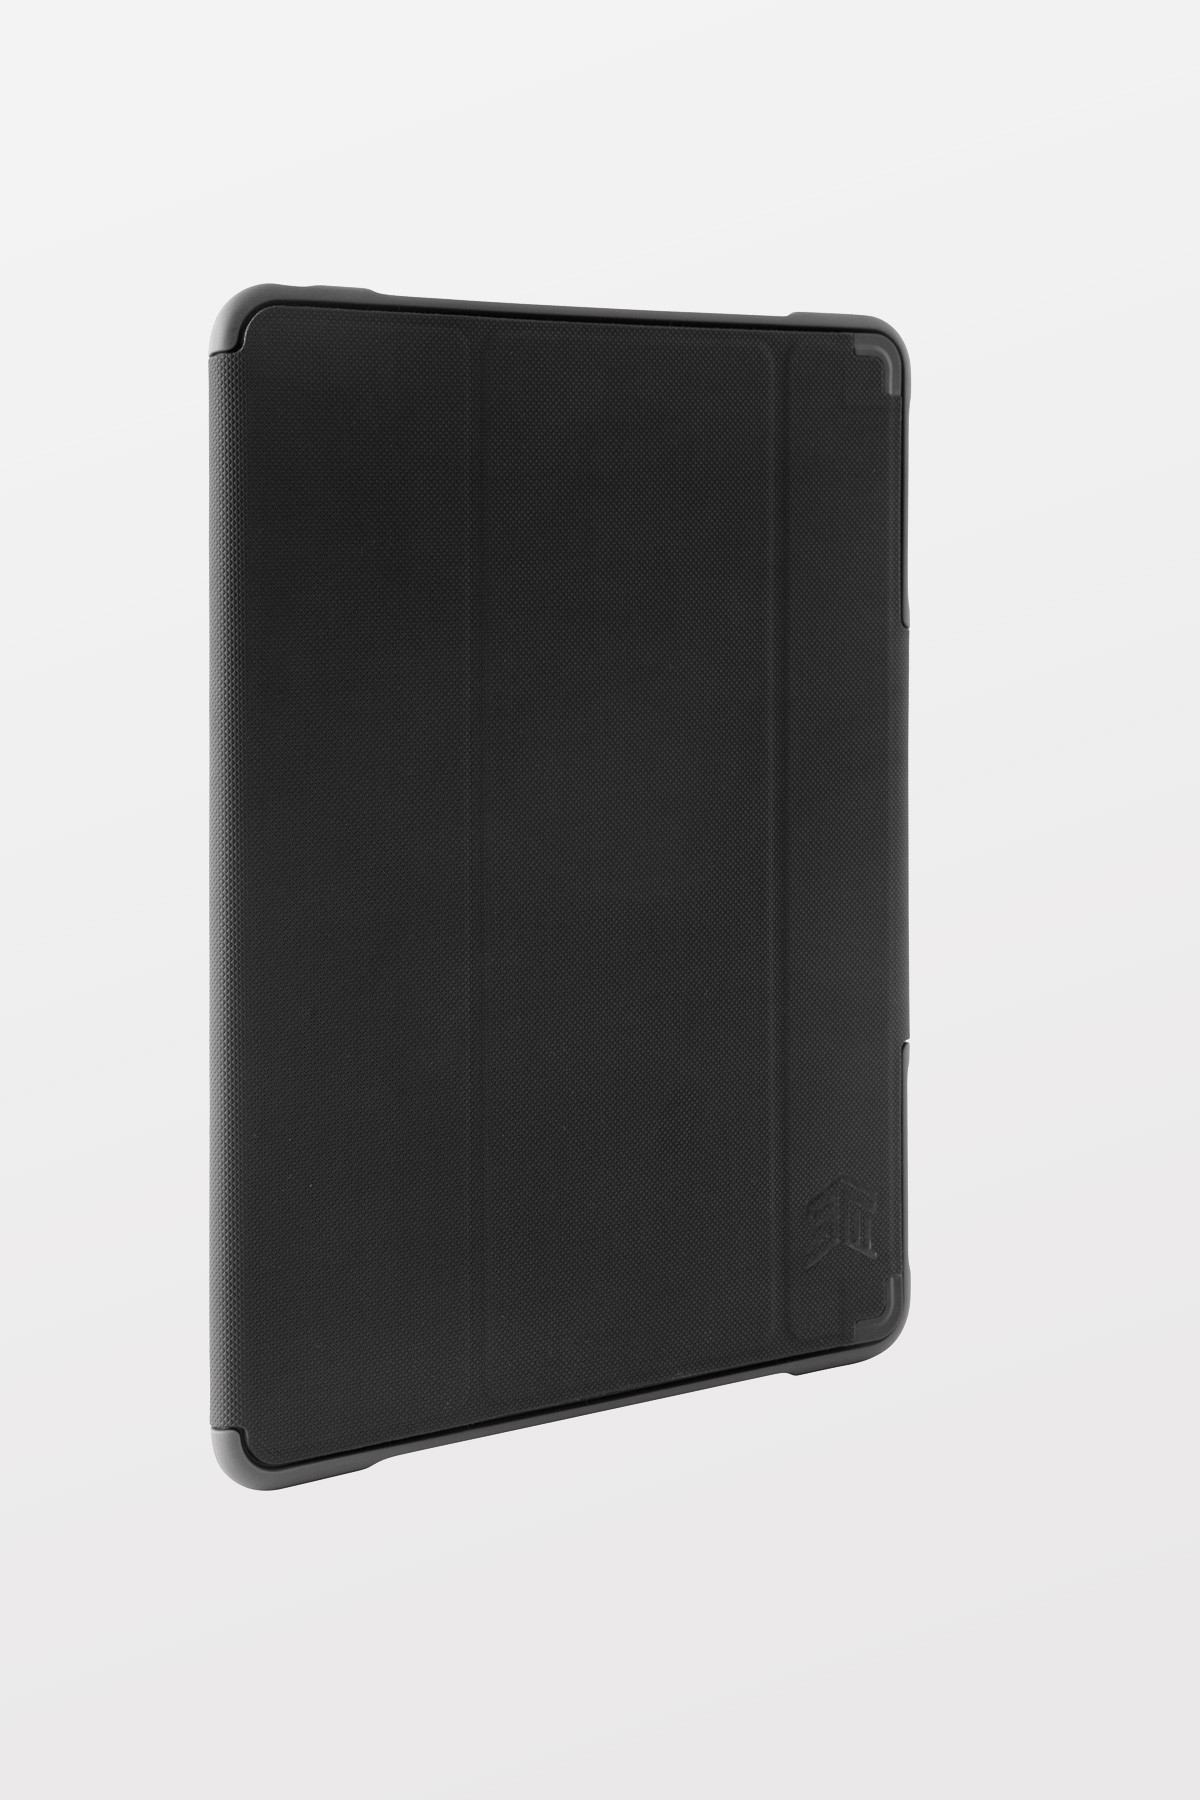 STM Dux for iPad mini 1-3 - Black